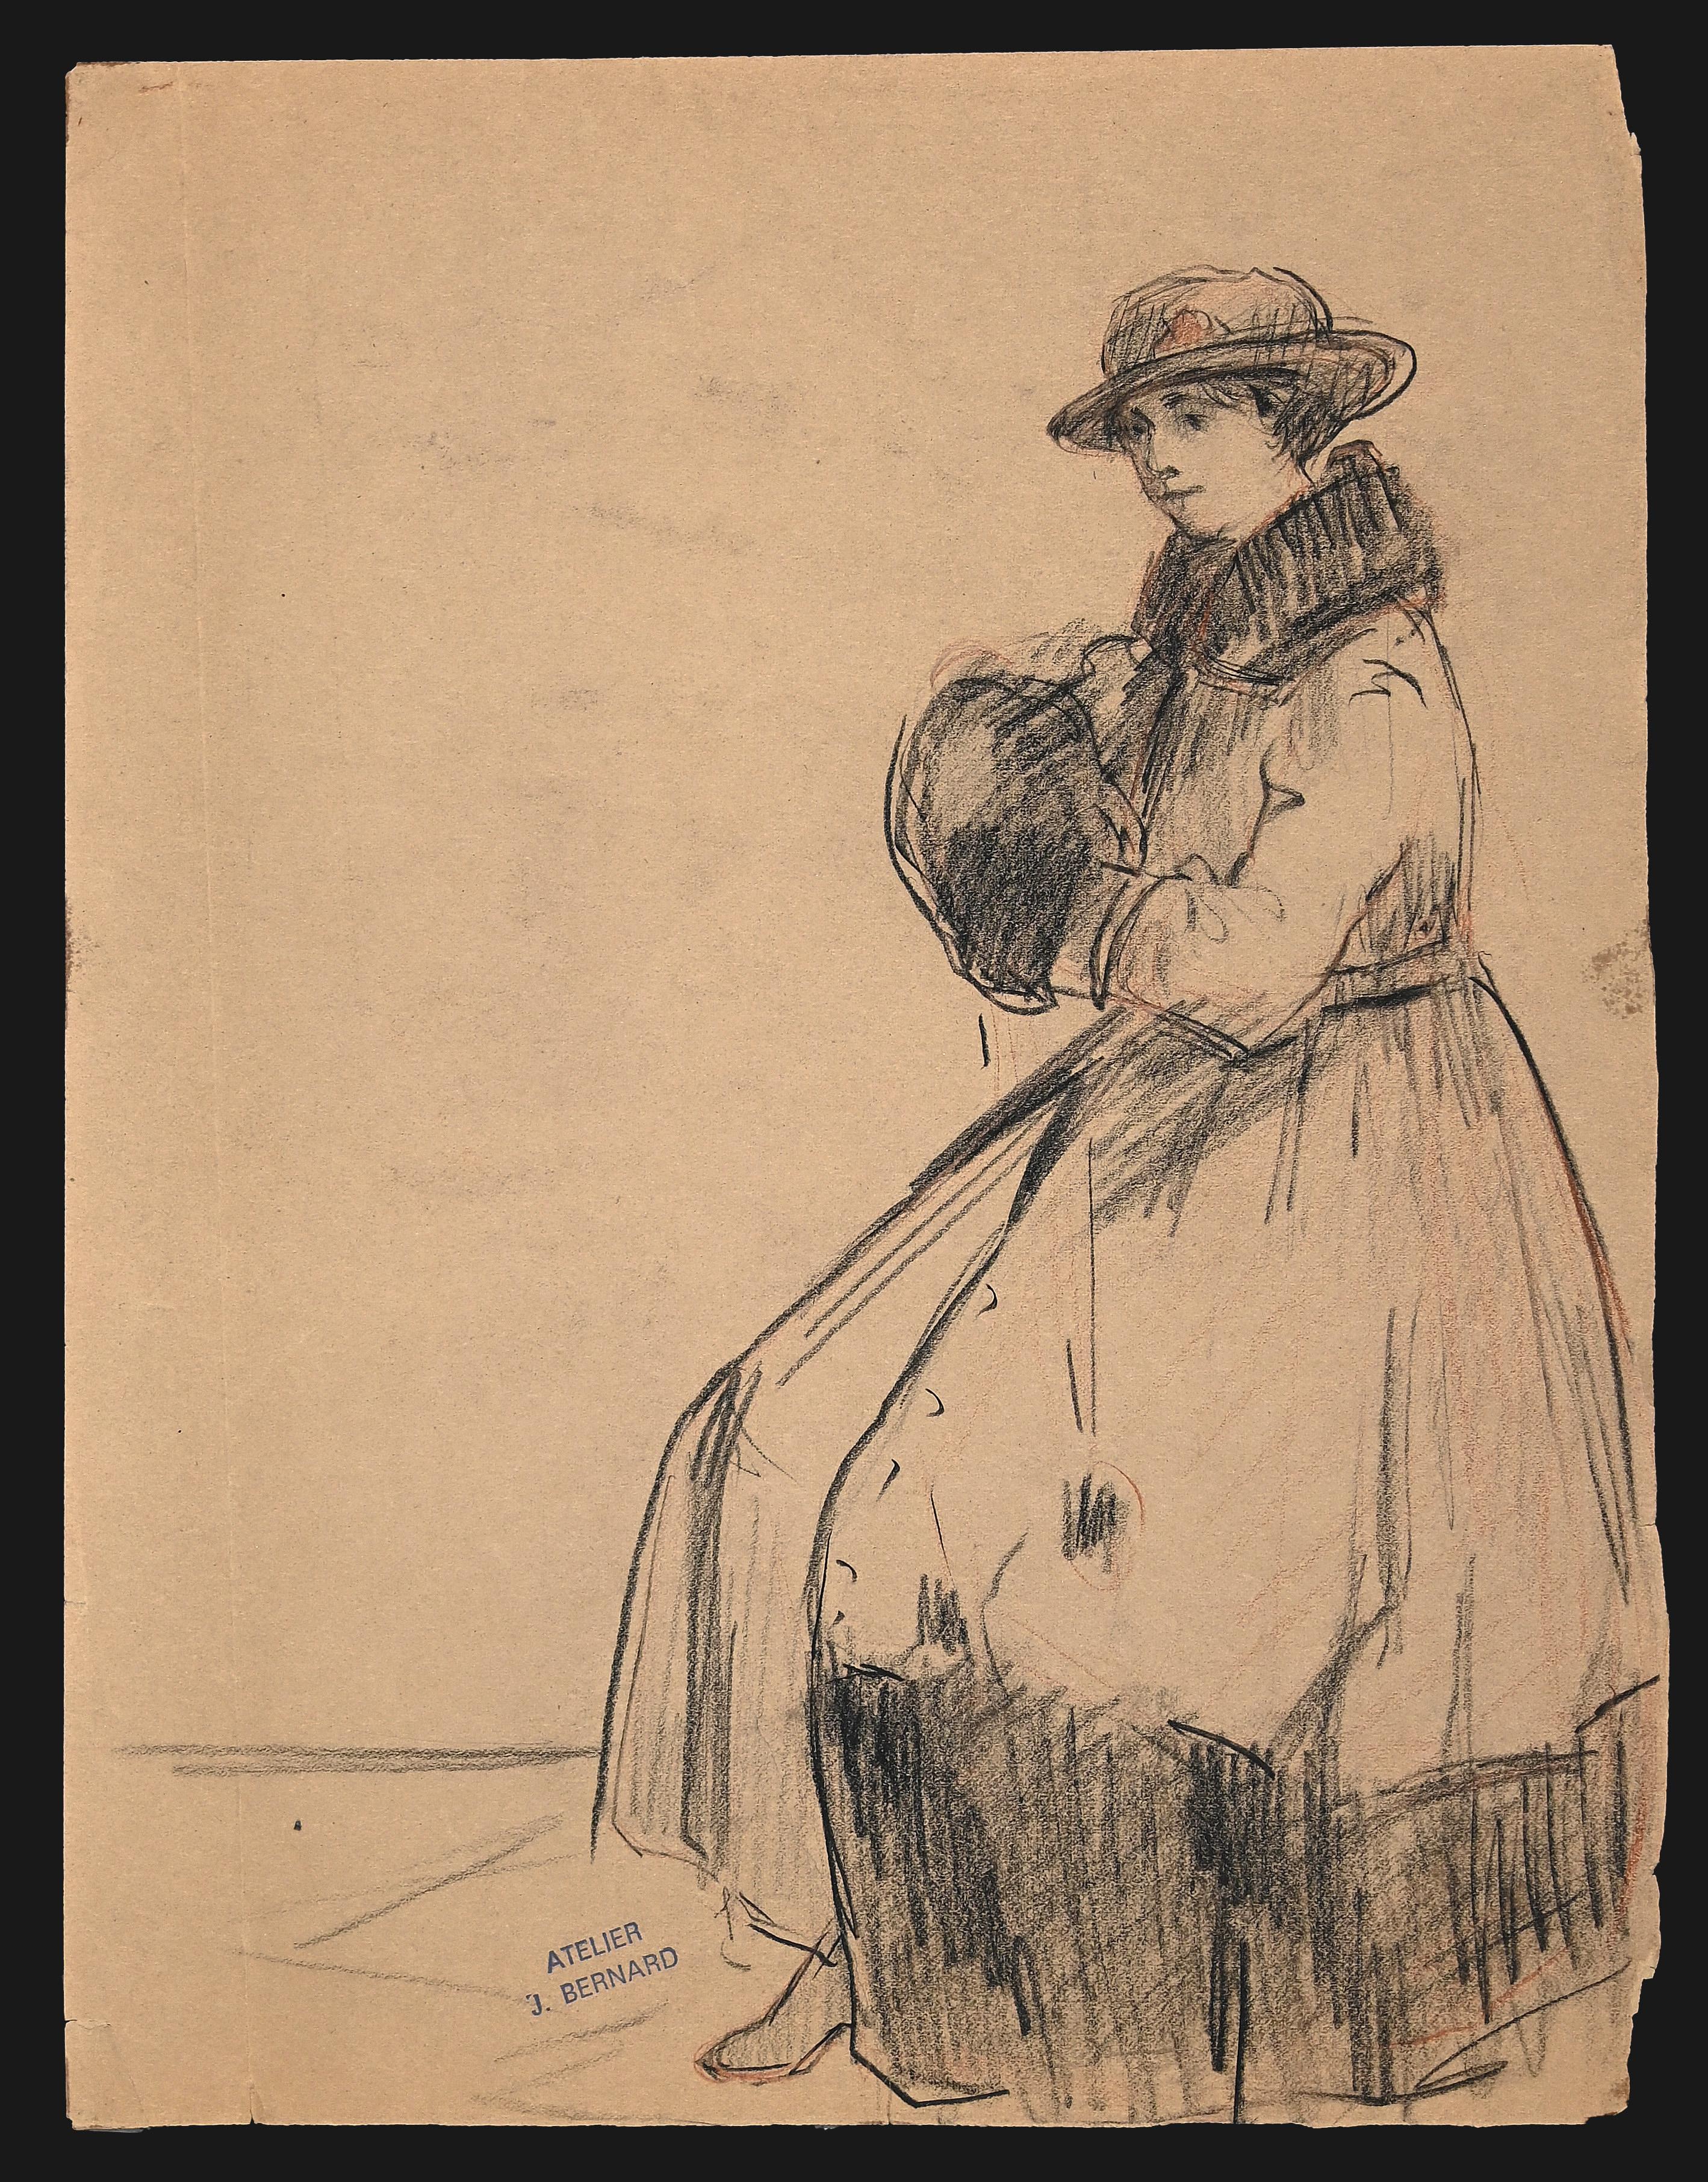 Die Figur einer Frau ist eine Bleistiftzeichnung von Jean Bernard aus dem Jahr 1910.

In gutem Zustand, abgenutztes Papier an der Randlinie und Spuren von altem Scotch auf der Rückseite.

Stempel des Ateliers am linken unteren Rand.